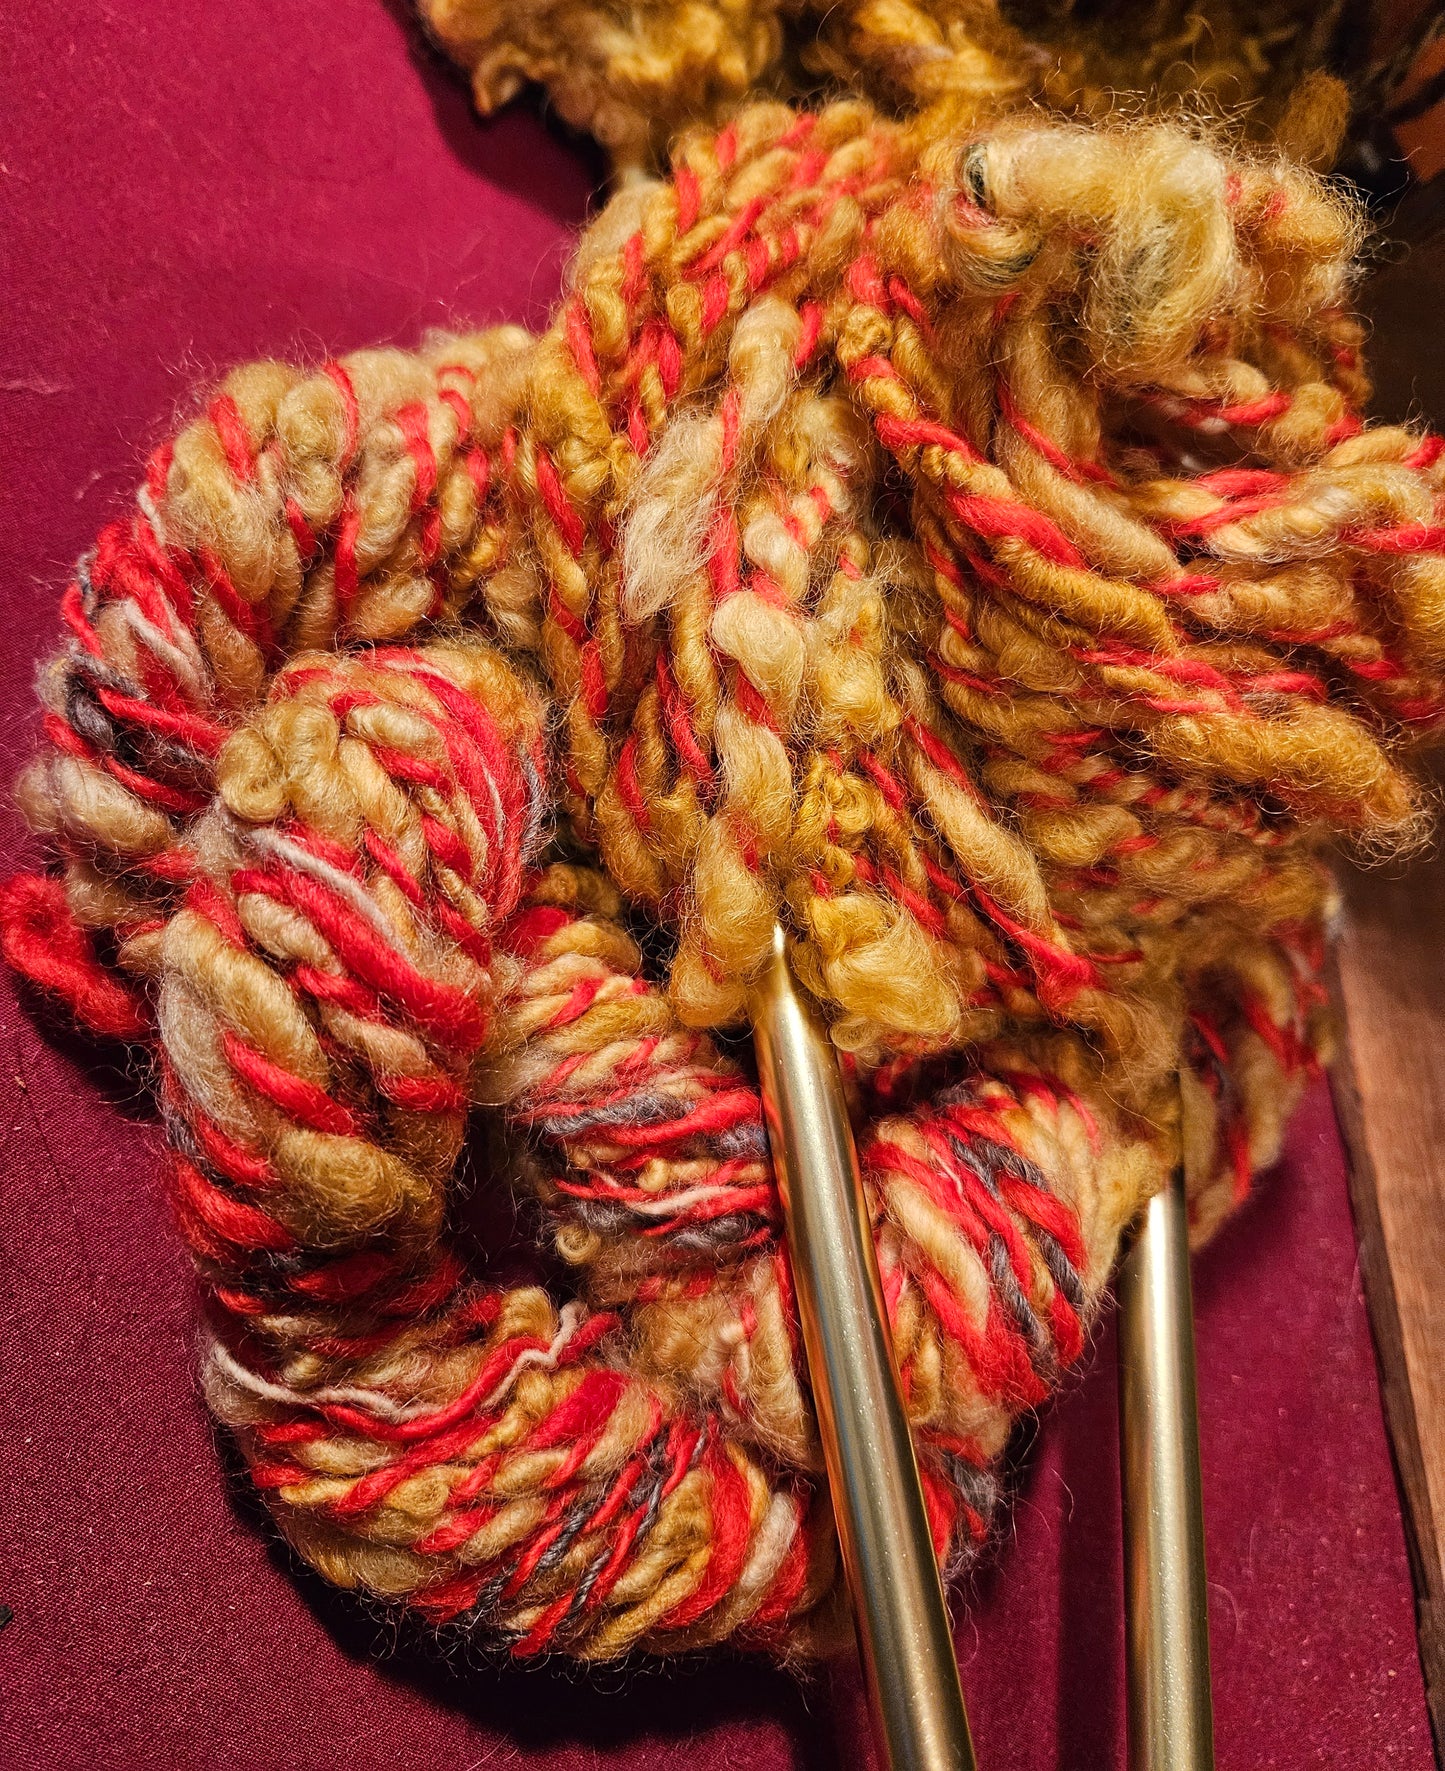 Cowl Knitting Kit KCLM40 Handspun Marigold & Scarlet Yarn "Lockspun" Romney & Pattern